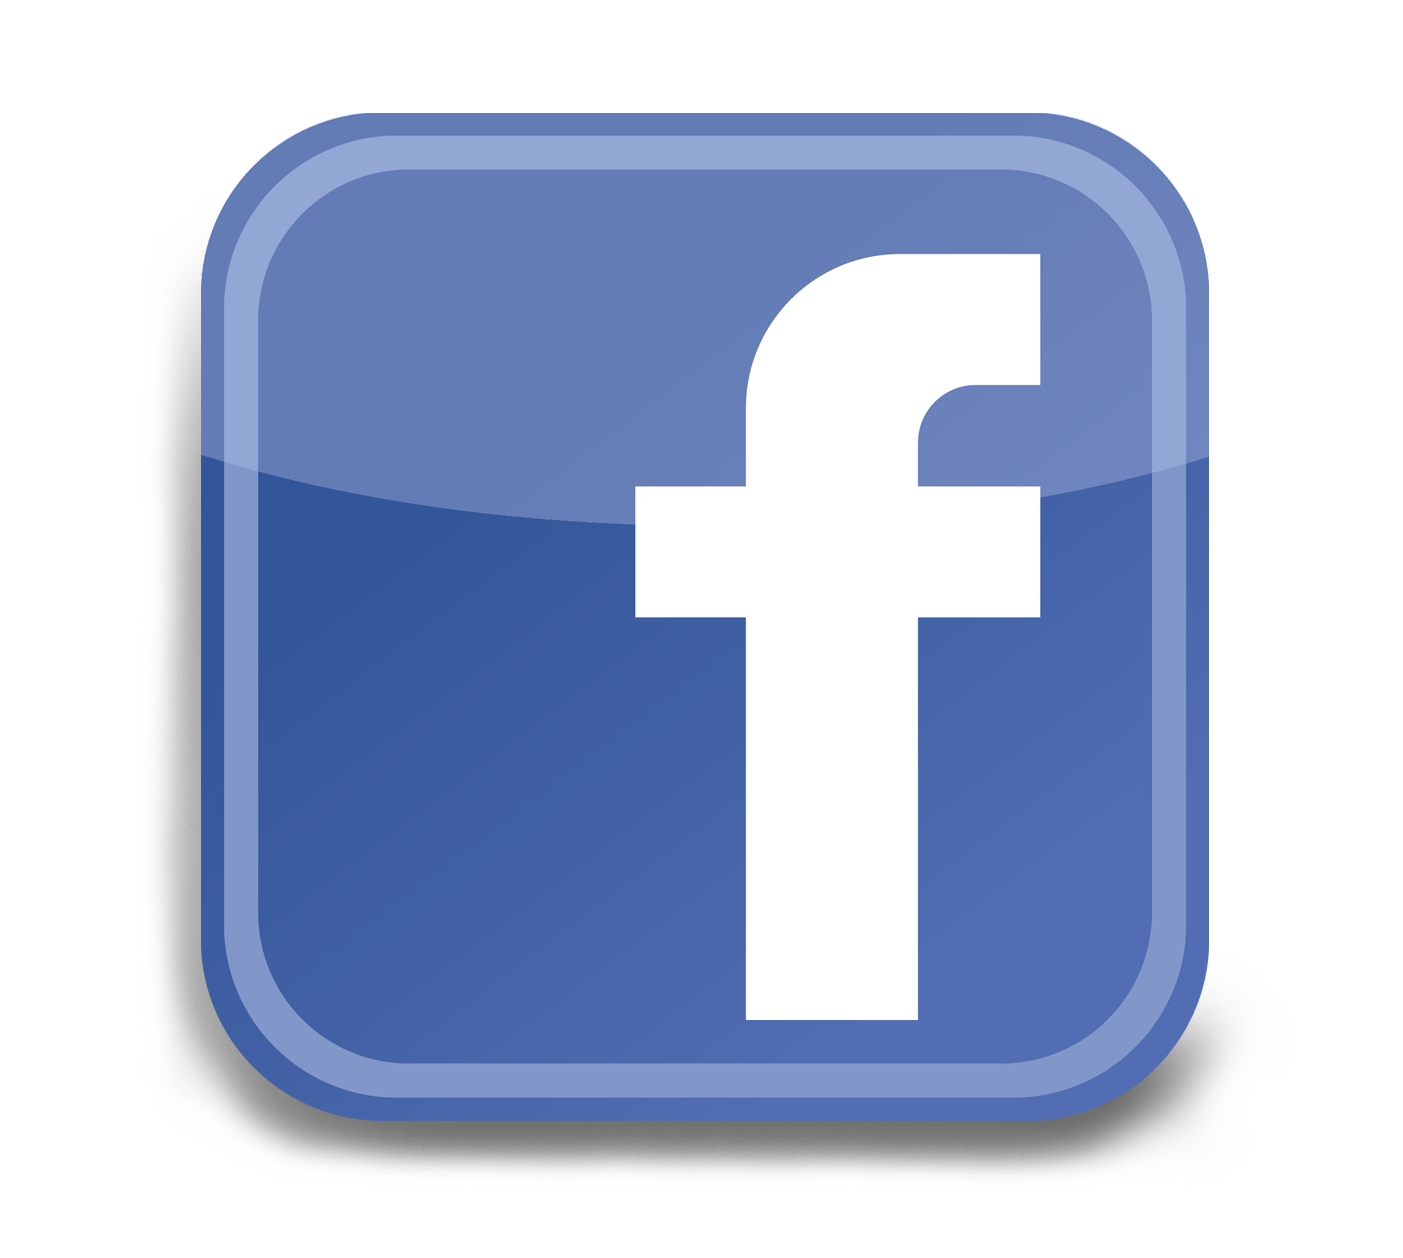 Dotaciones y Sastrería IDEAL - Botón Facebook